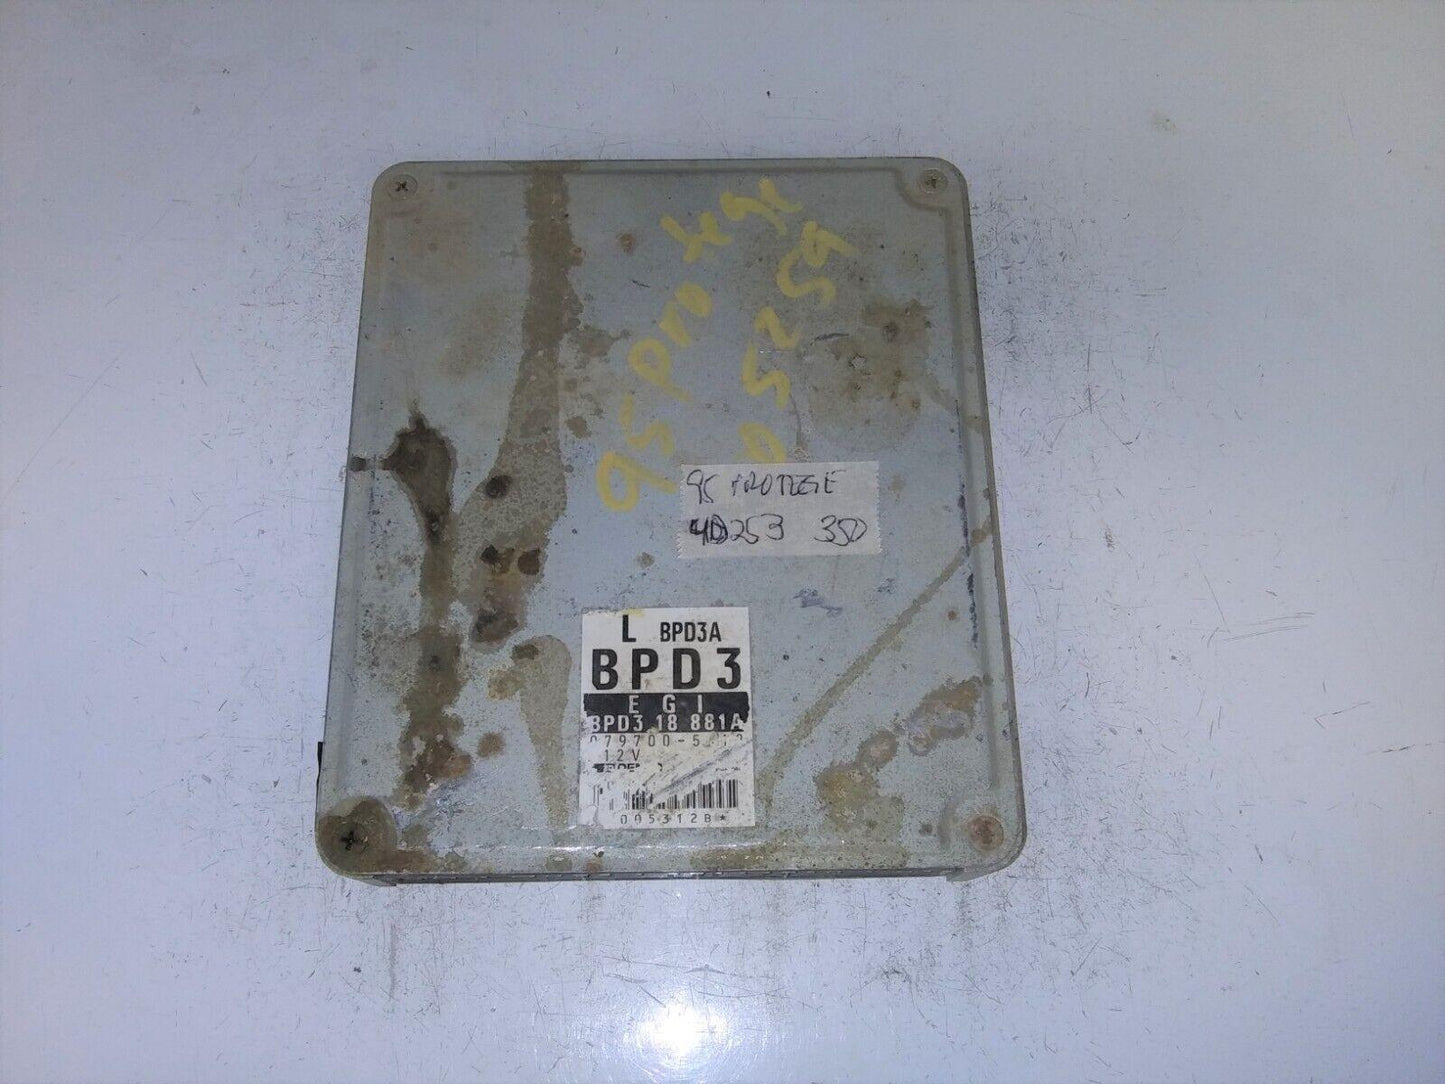 1995 Mazda Protege ecm ecu computer BPD3 18 881A.